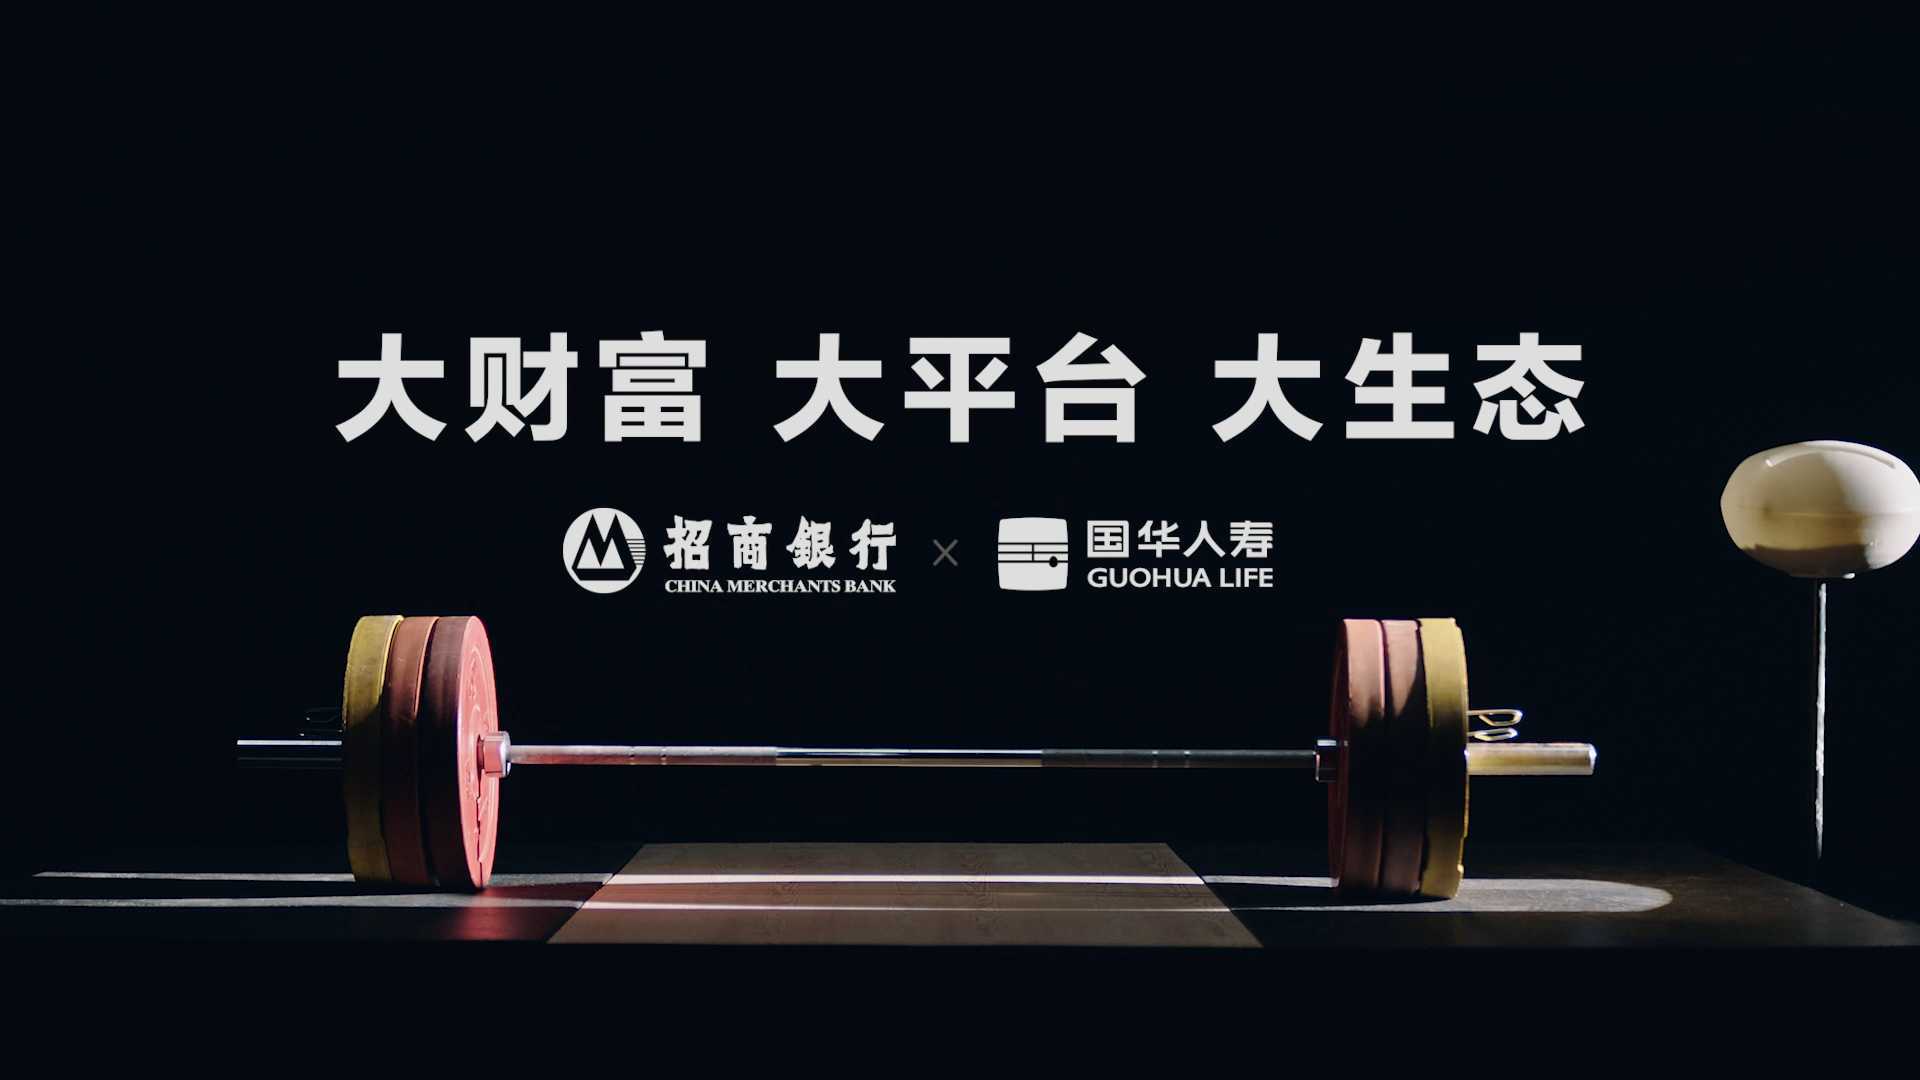 招商银行财富开放平台系列视频《国华人寿举重篇》